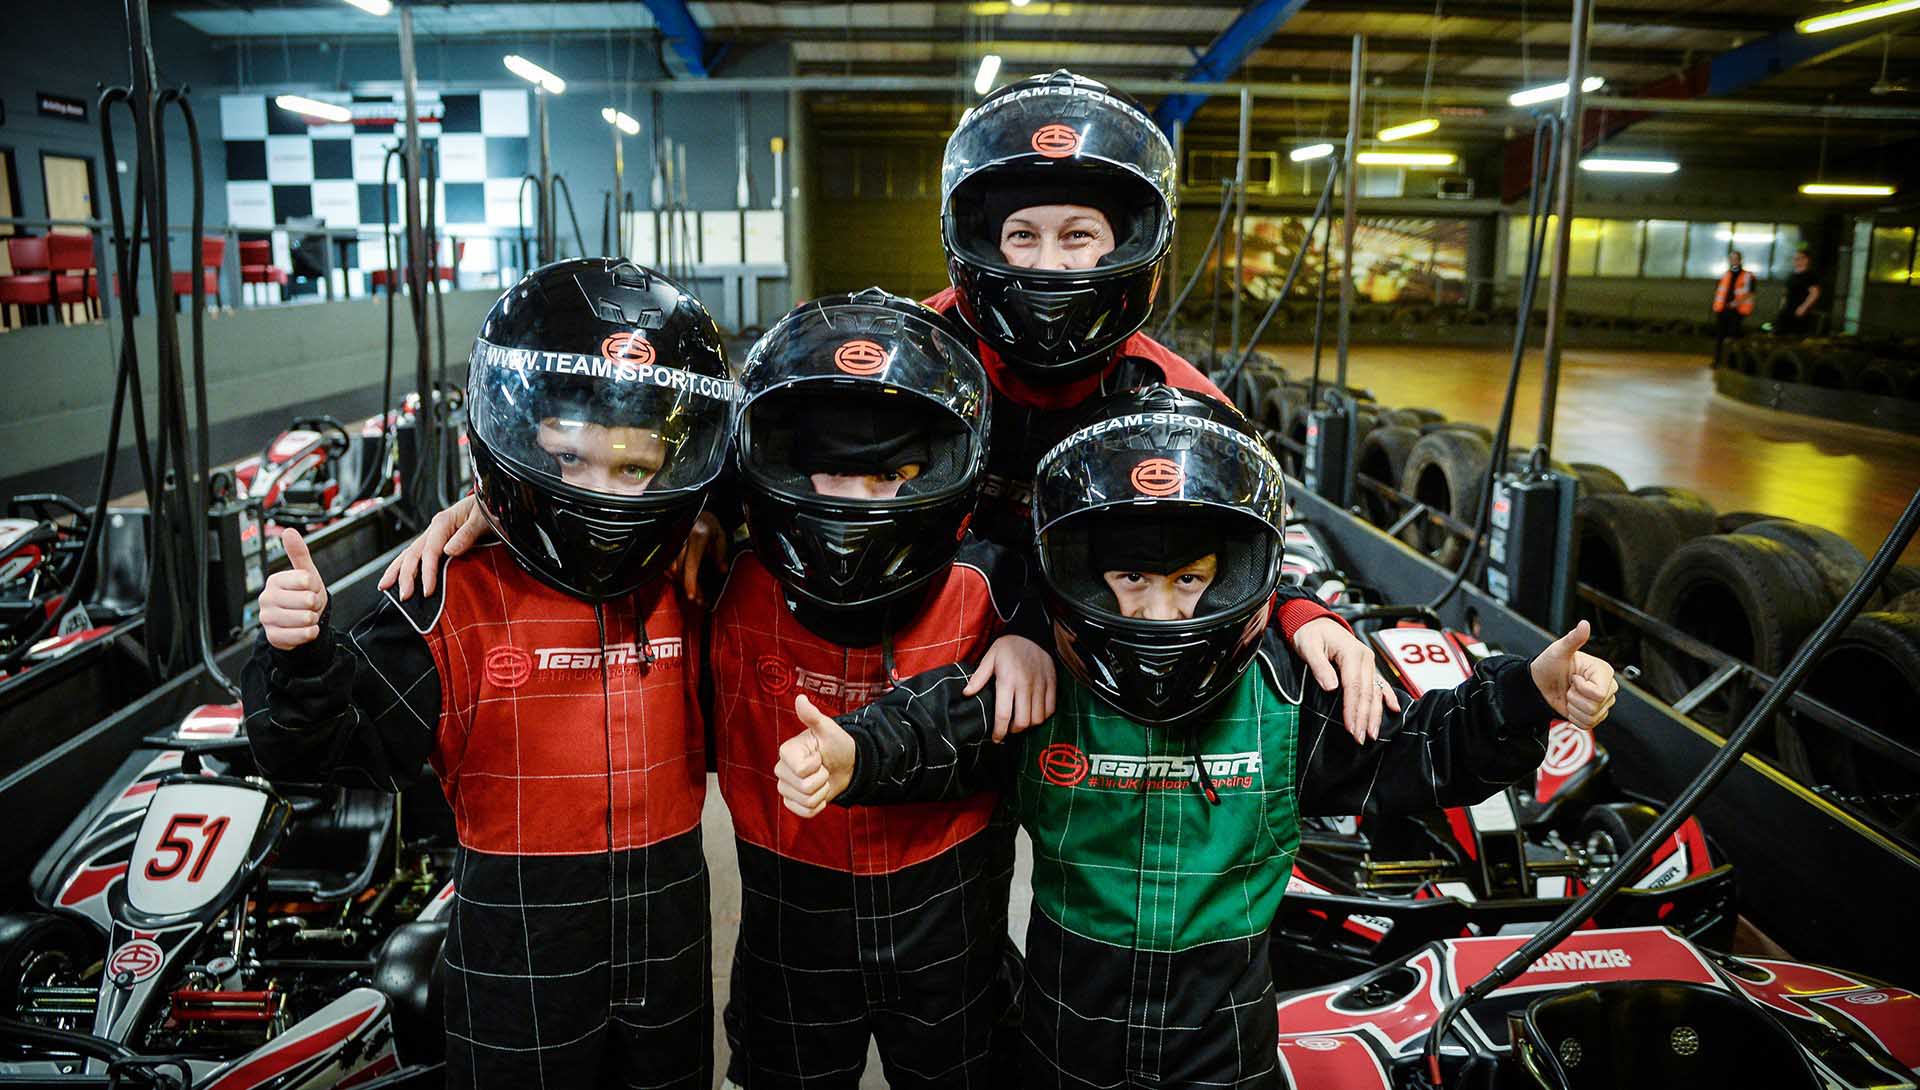 Teamsport Karting for kids